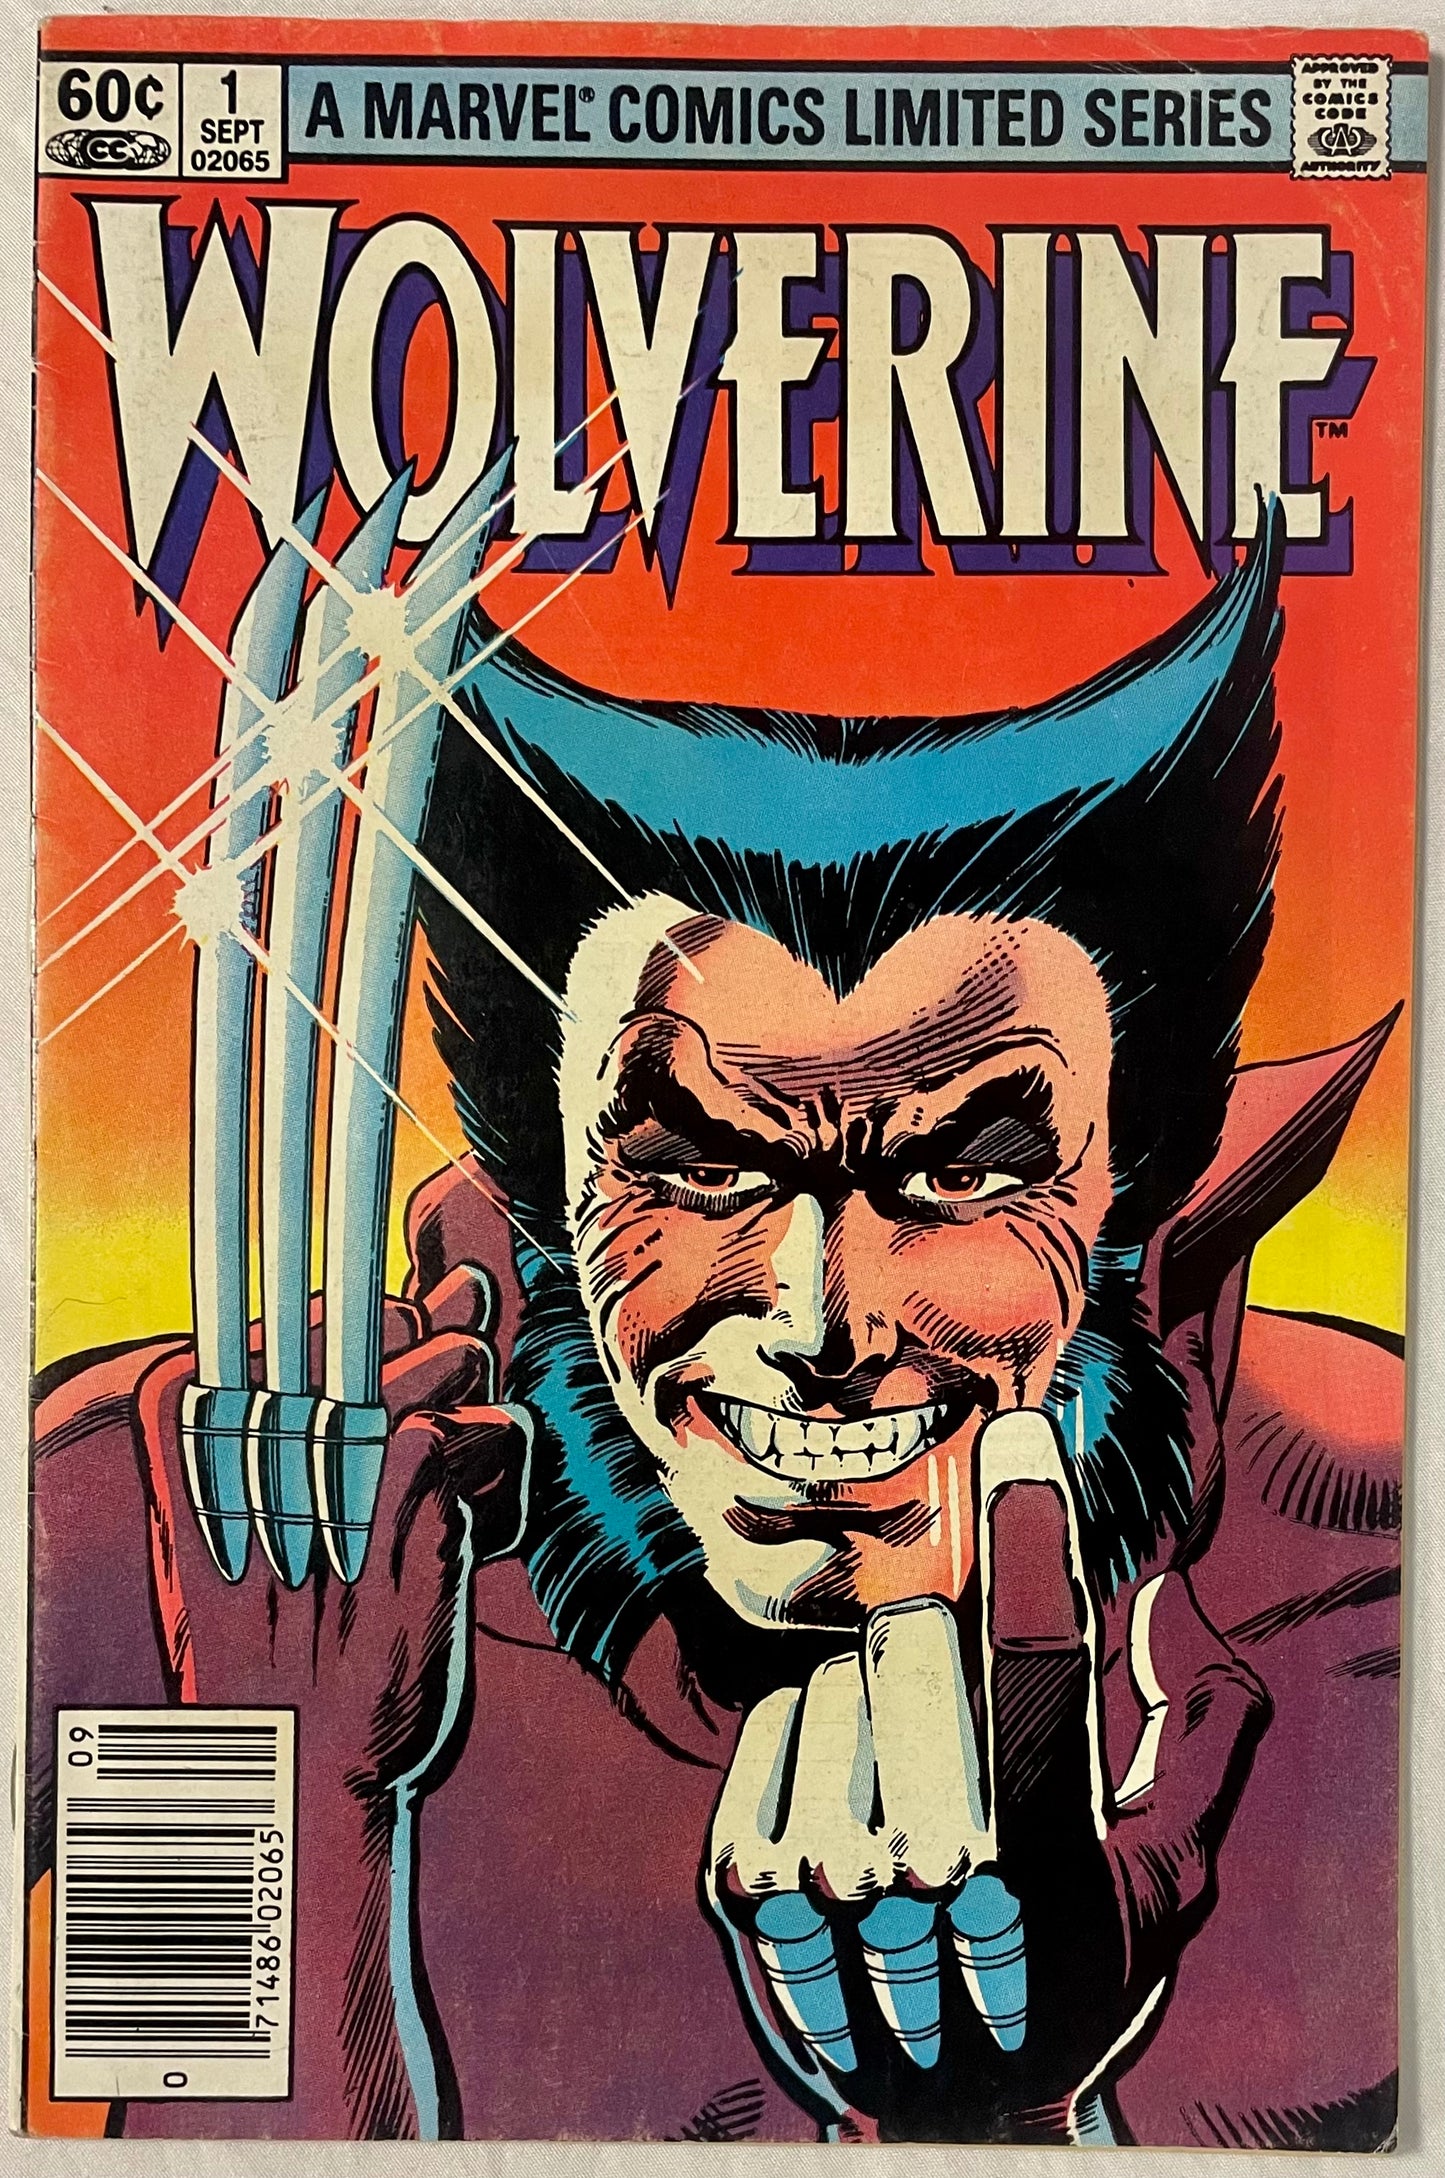 Marvel Comics Wolverine Limited Series #1